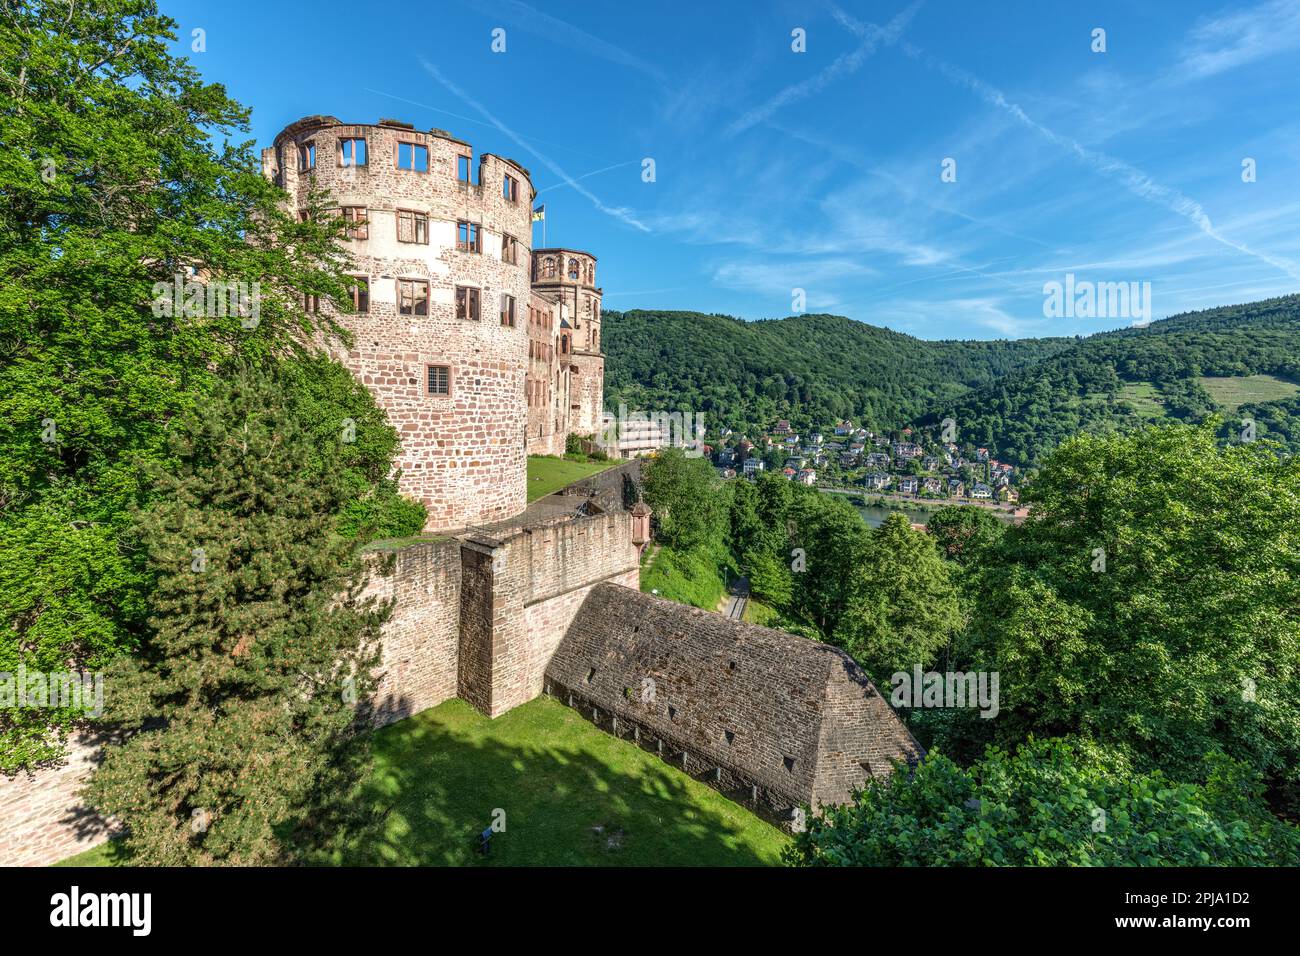 Il Castello di Heidelberg, sul colle di Konigstuhl, un edificio rinascimentale gotico del XIII secolo nella valle del Neckar, si affaccia sulla città Vecchia e sul fiume Neckar. Heidelberg. Foto Stock